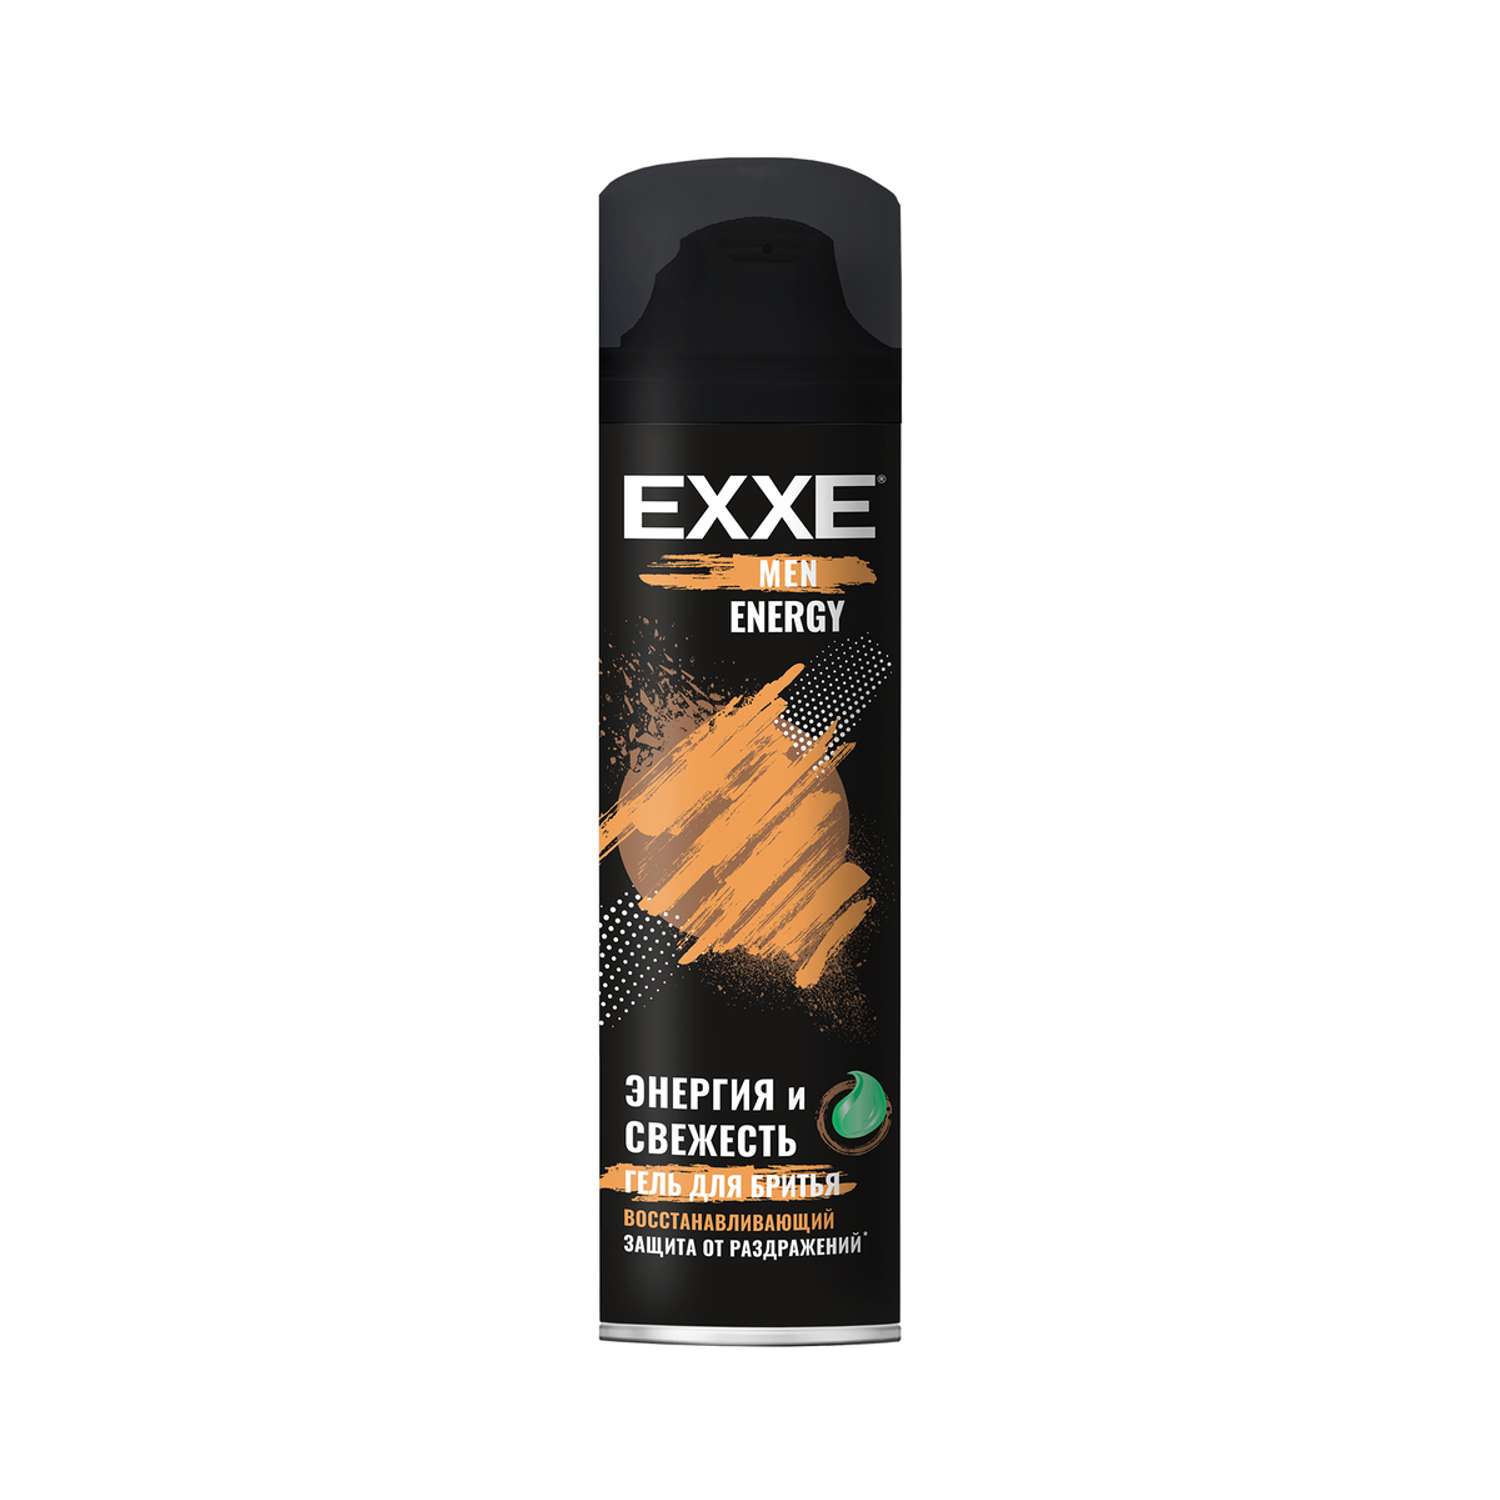 Пена для бритья MEN EXXE Восстанавливающая ENERGY 200 мл - фото 1